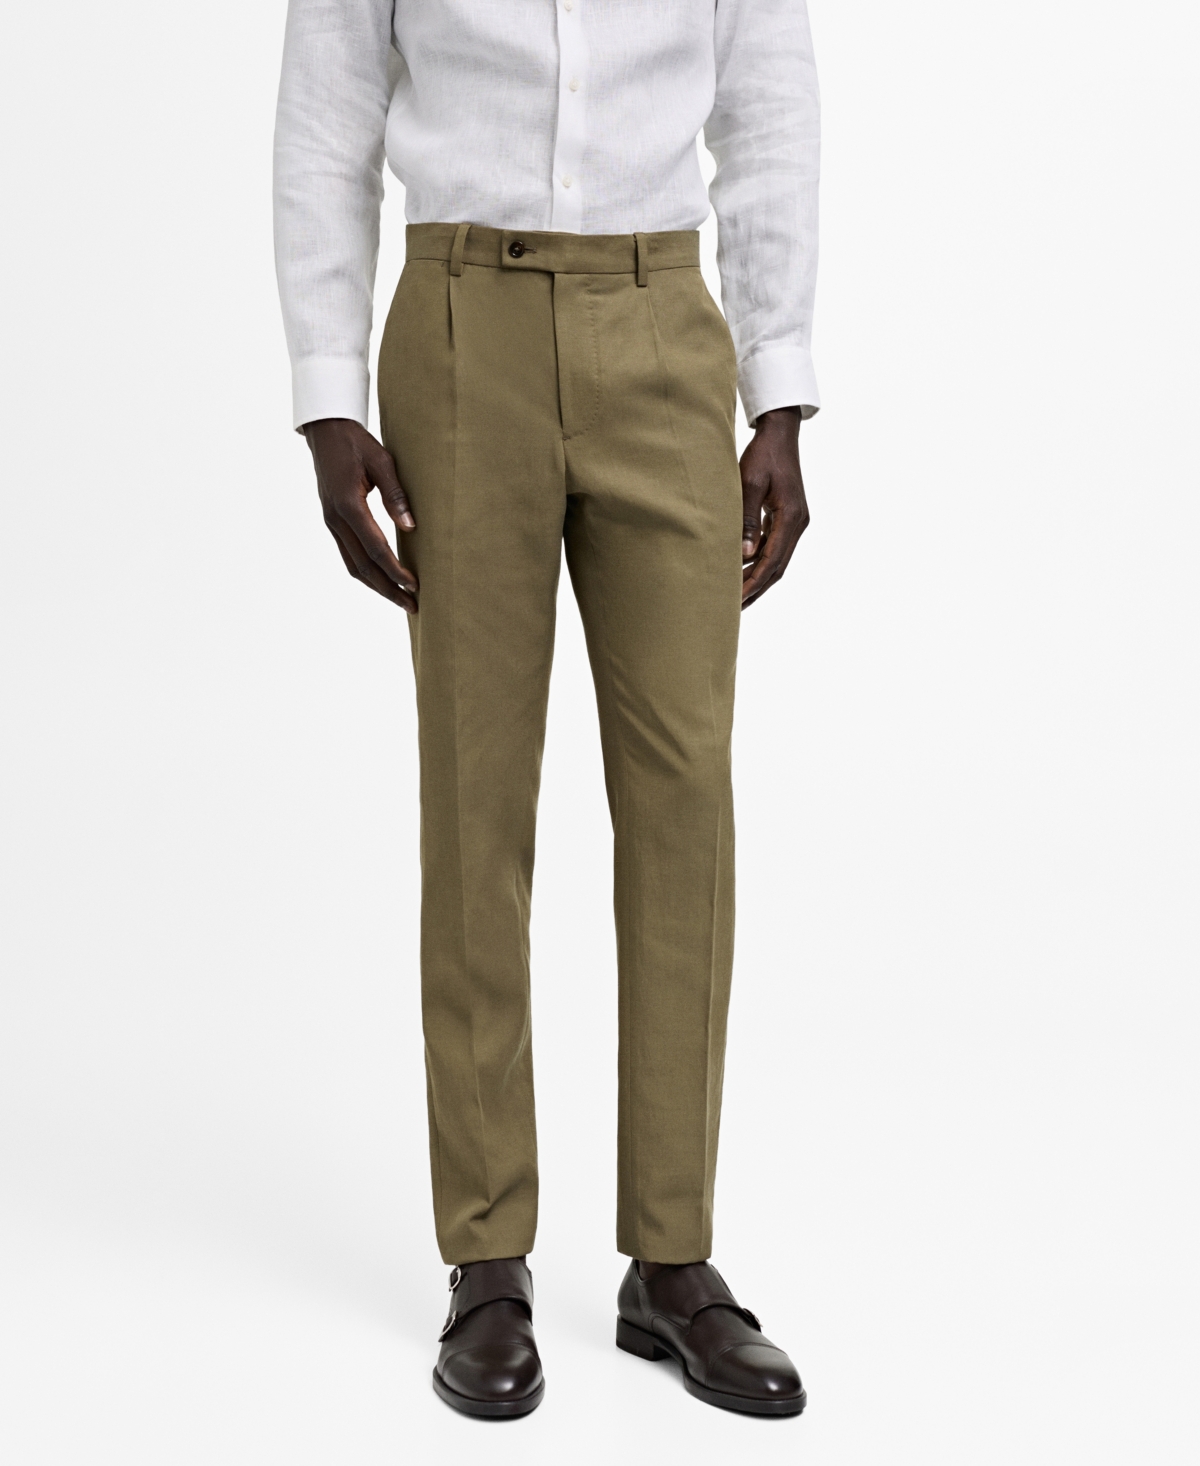 Men's Slim-Fit Pleated Suit Pants - Khaki